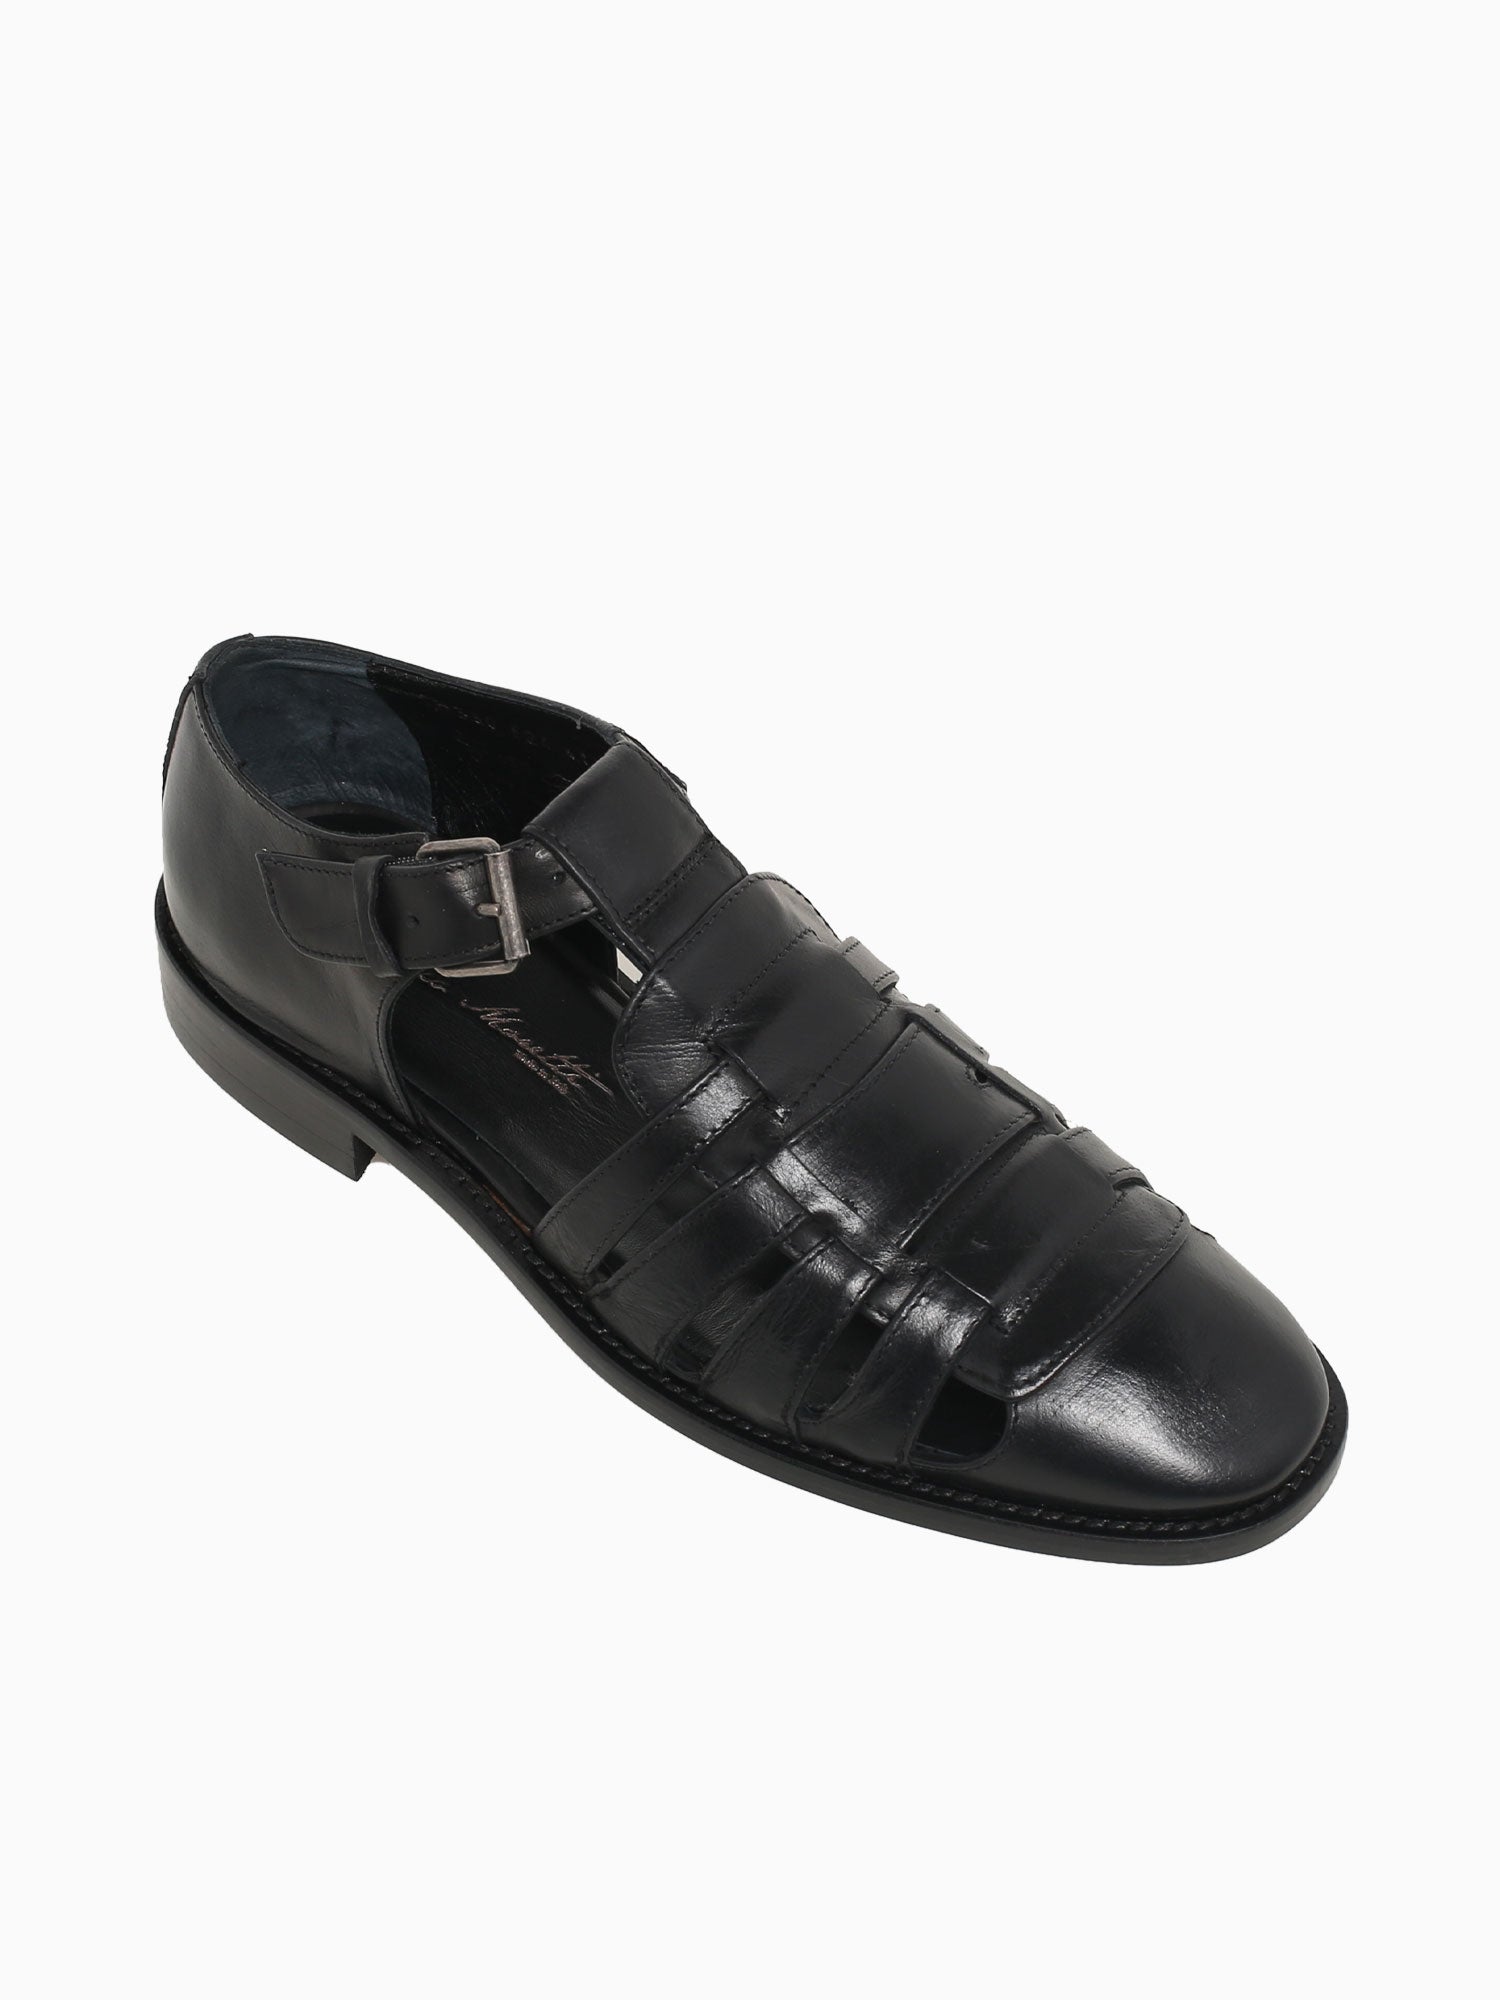 40330 Nero Calf Leather Black / 40 / M